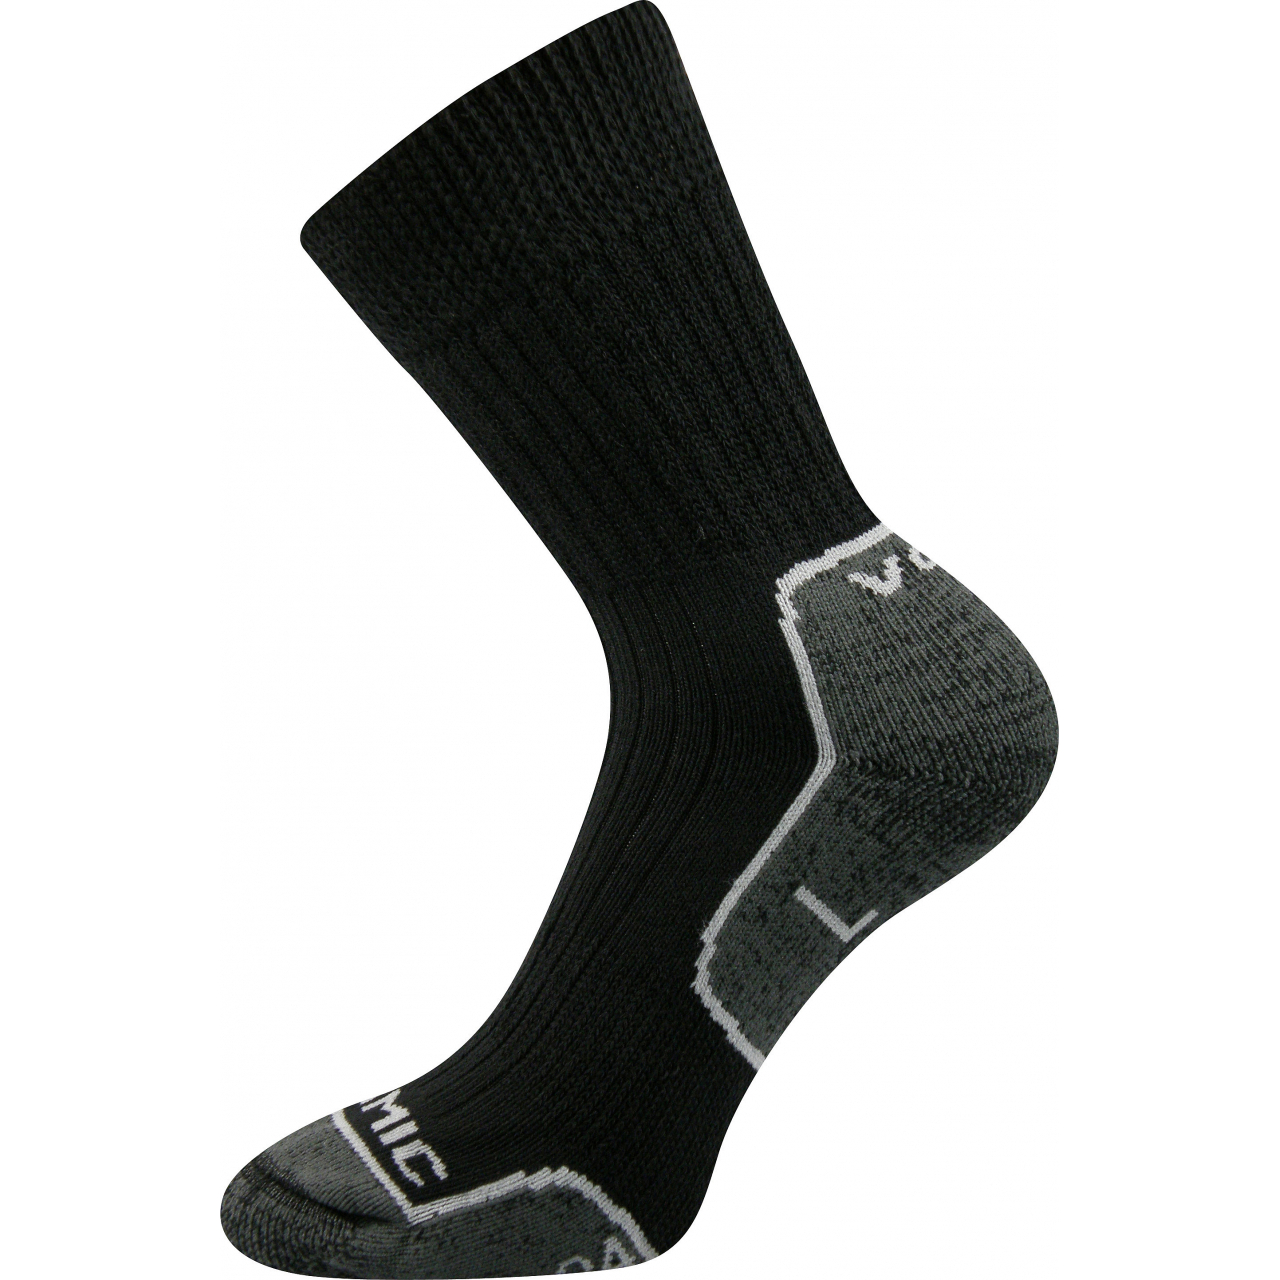 Ponožky unisex termo Voxx Zenith L + P - černé-šedé, 43-45